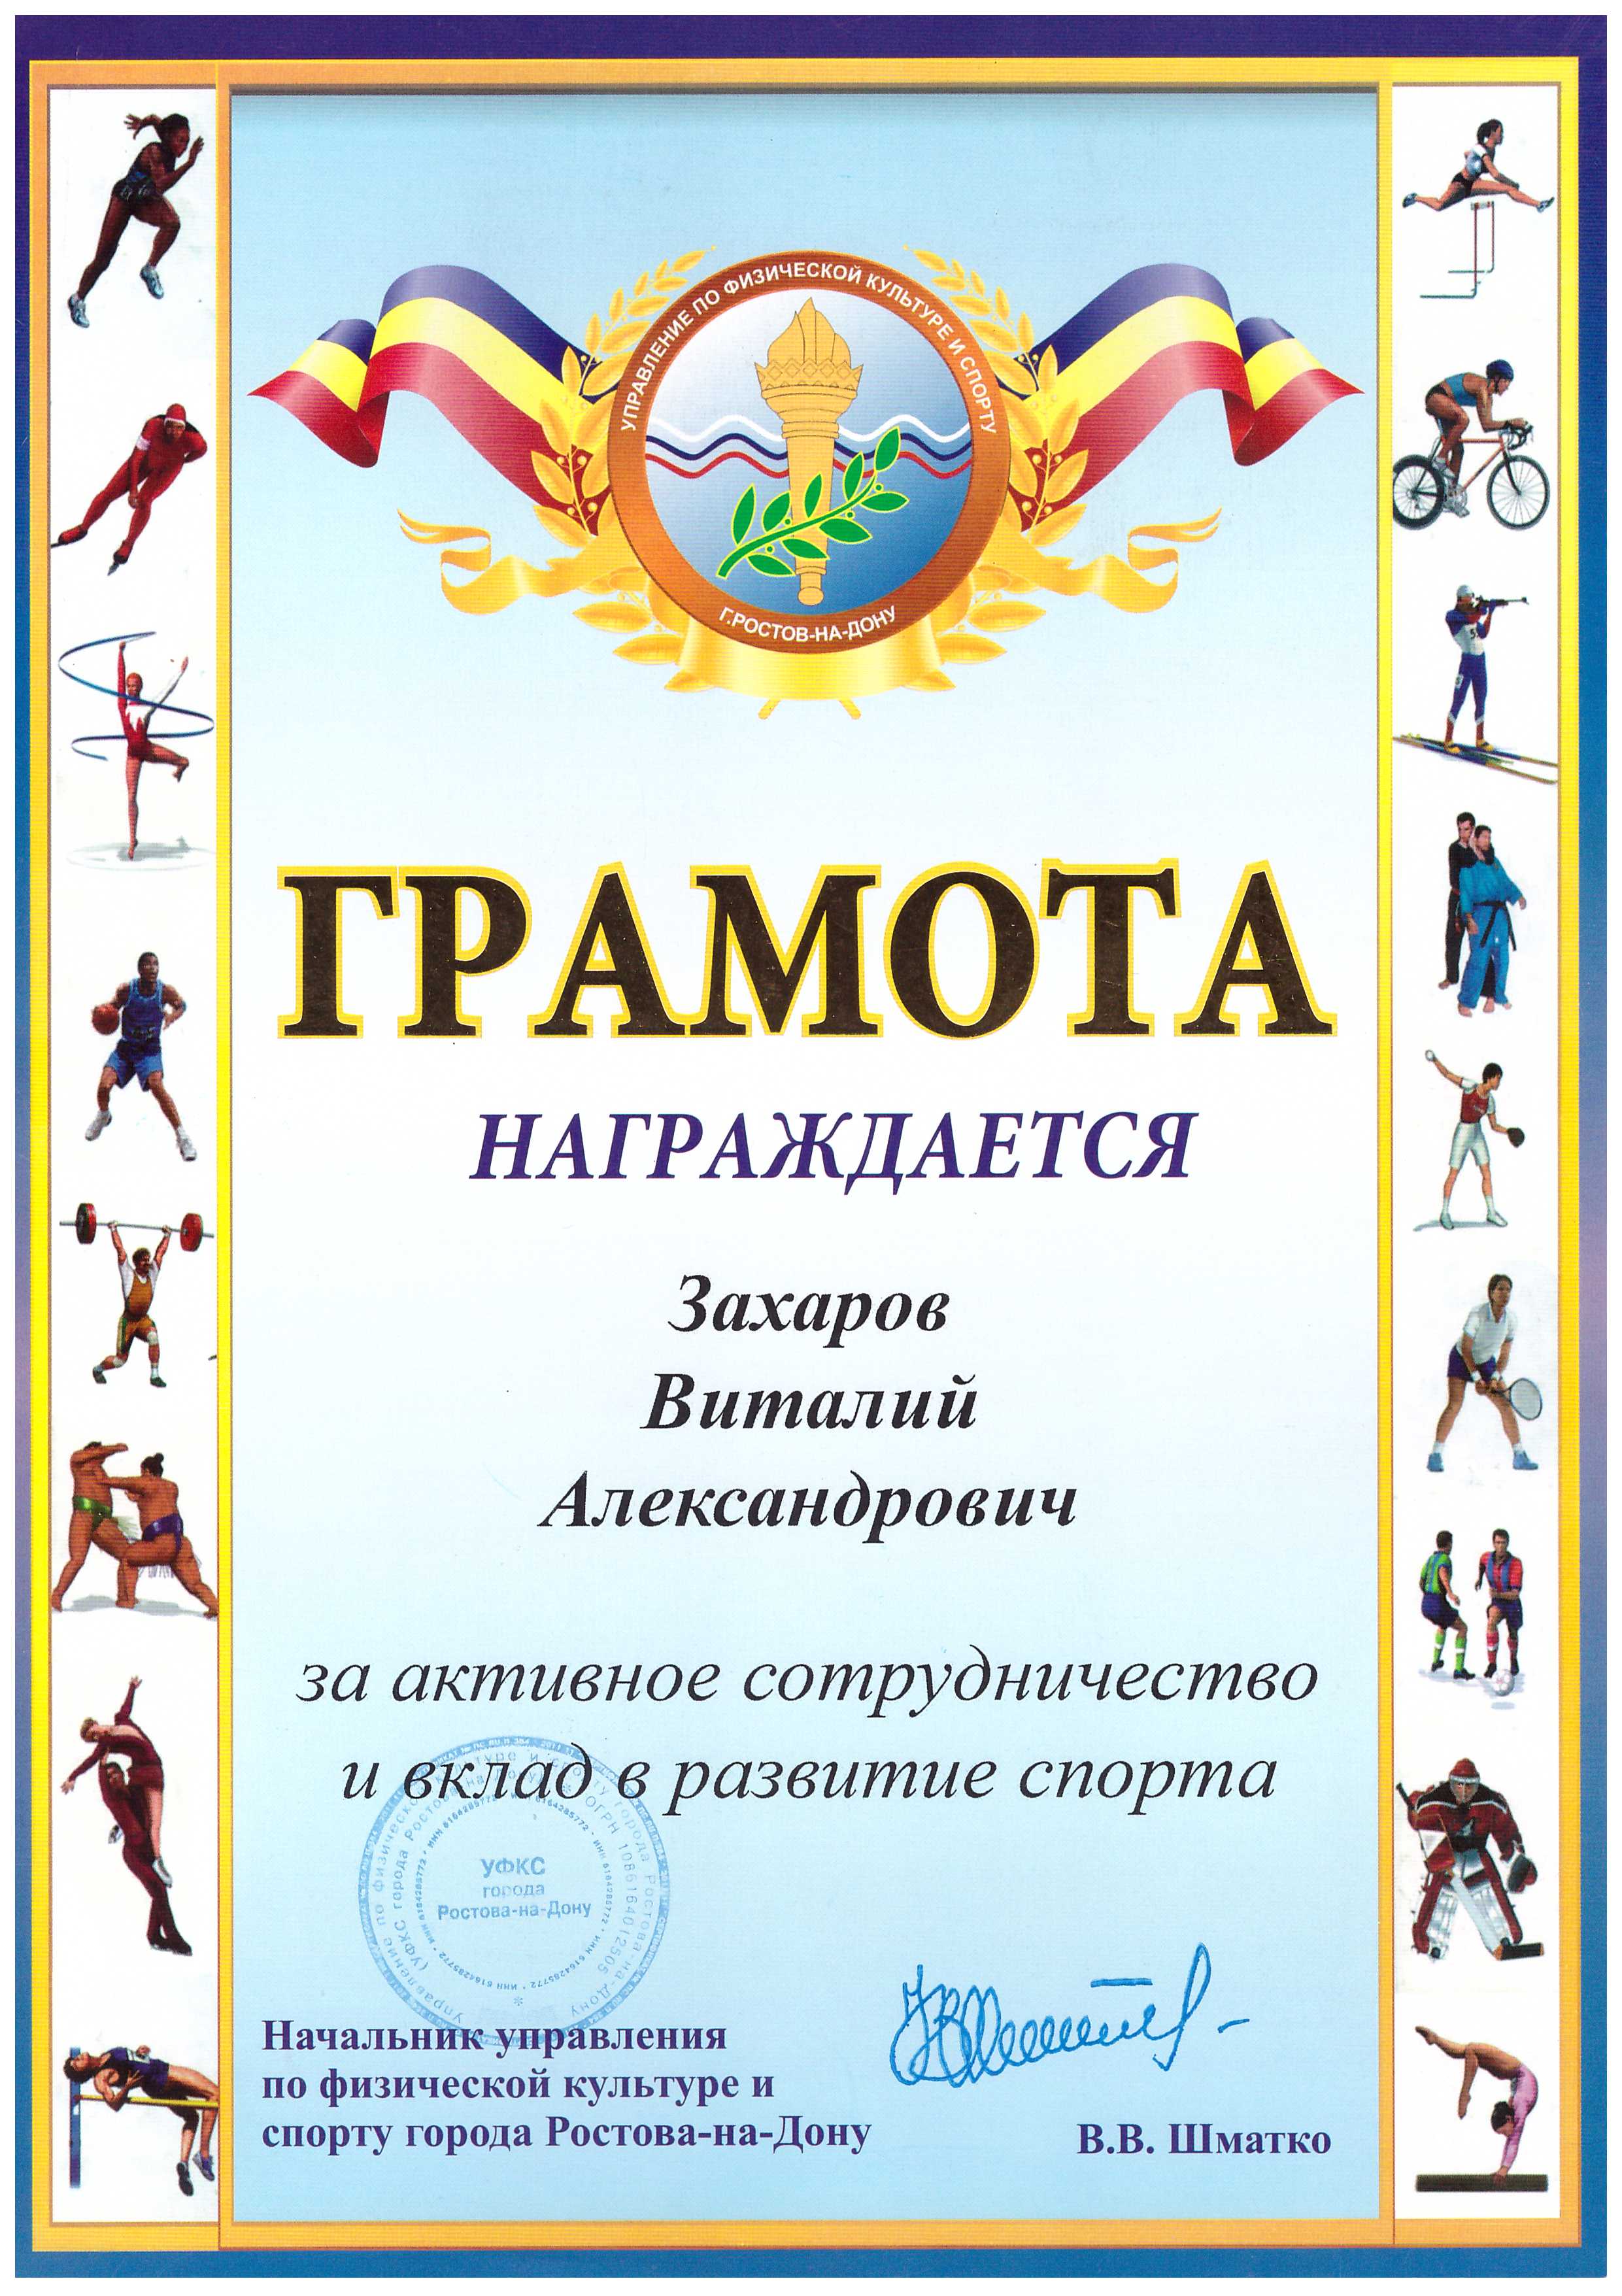 Управление по физической культуре и спорту города Ростова-на-Дону